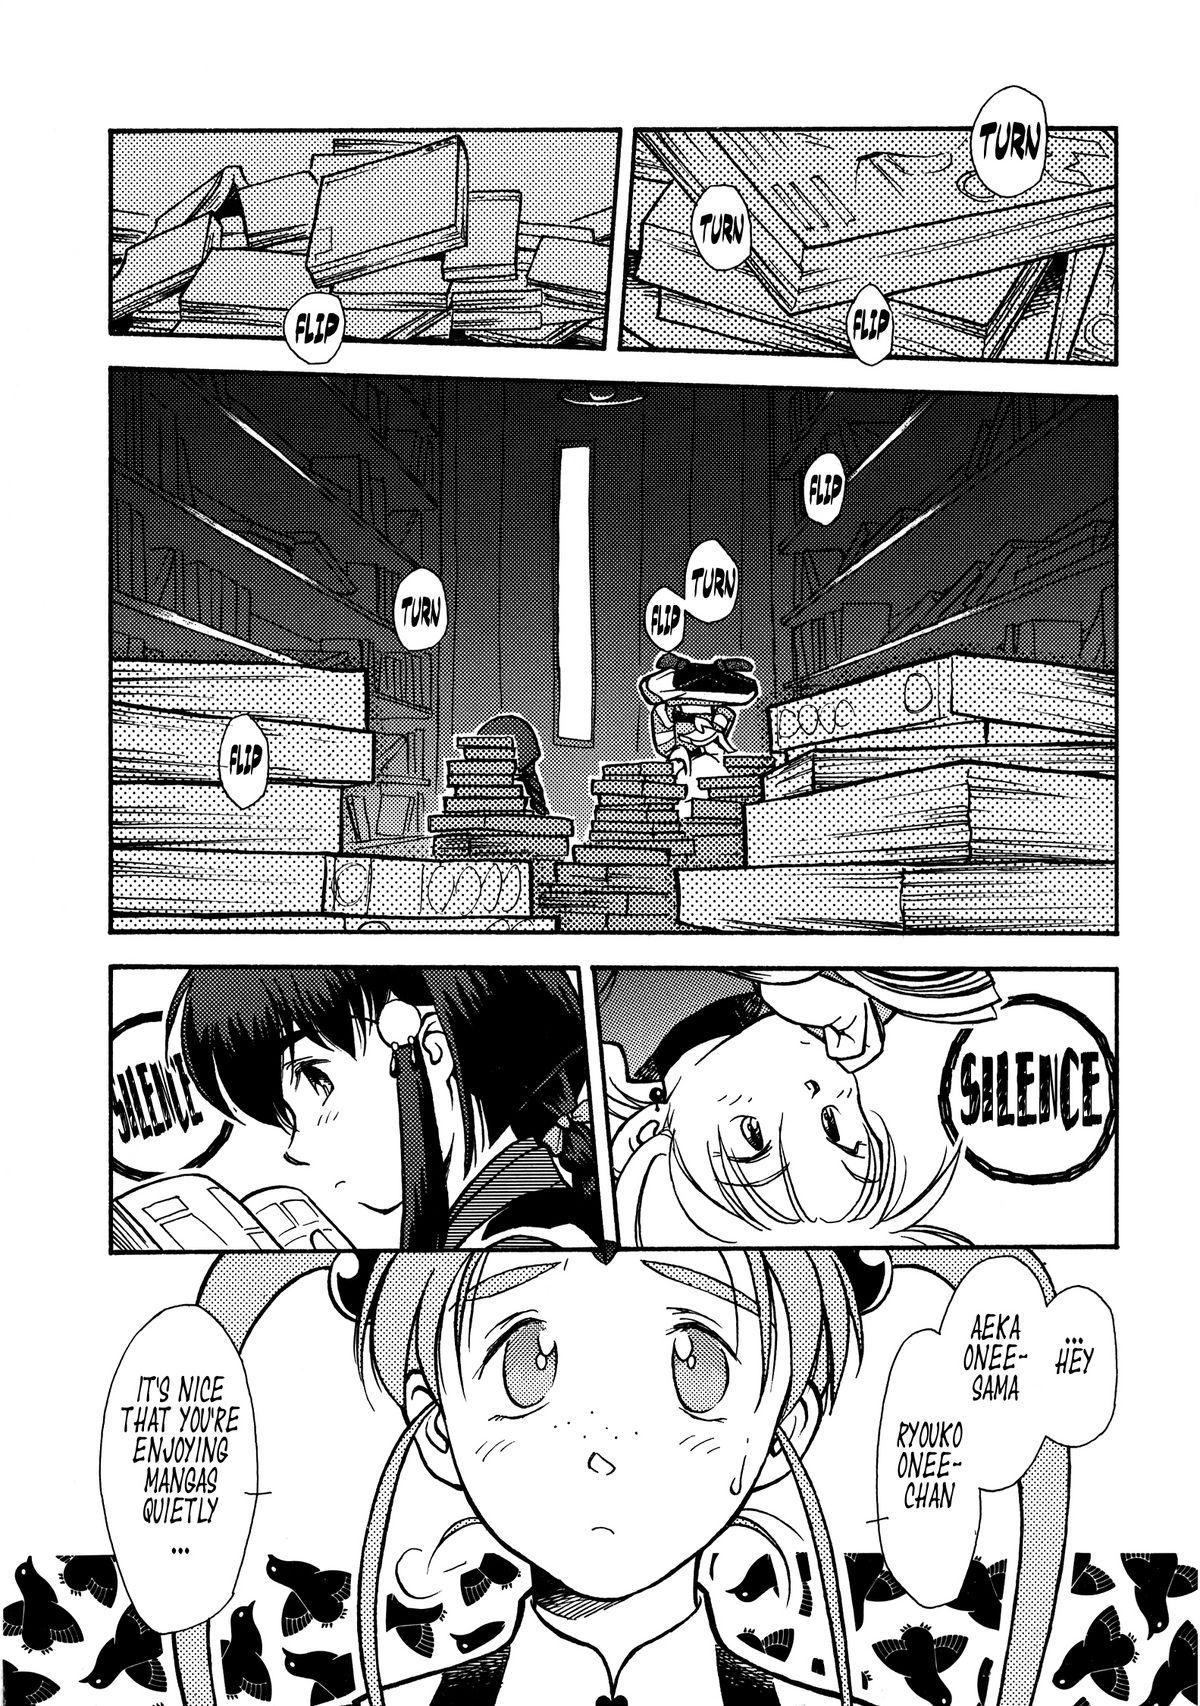 Pee Ima Ga Shun! Vol. 1 - Tenchi muyo Room - Page 5